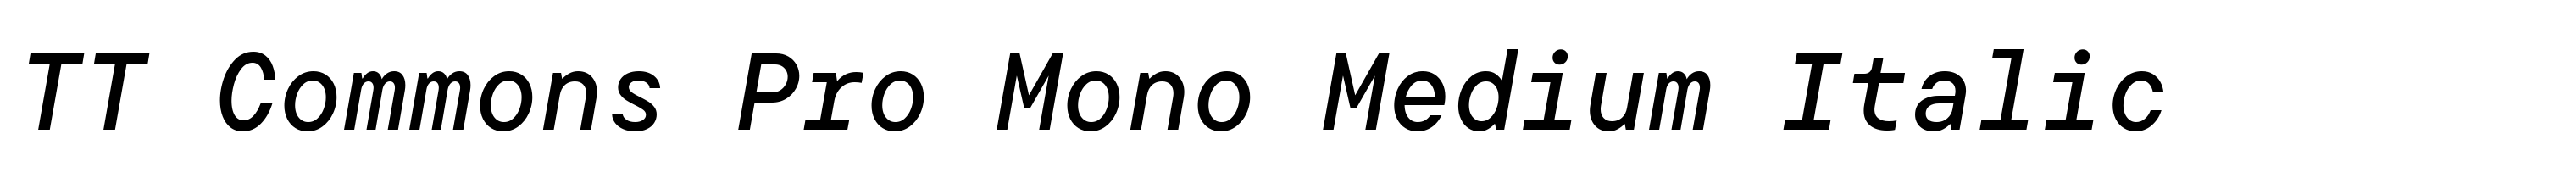 TT Commons Pro Mono Medium Italic